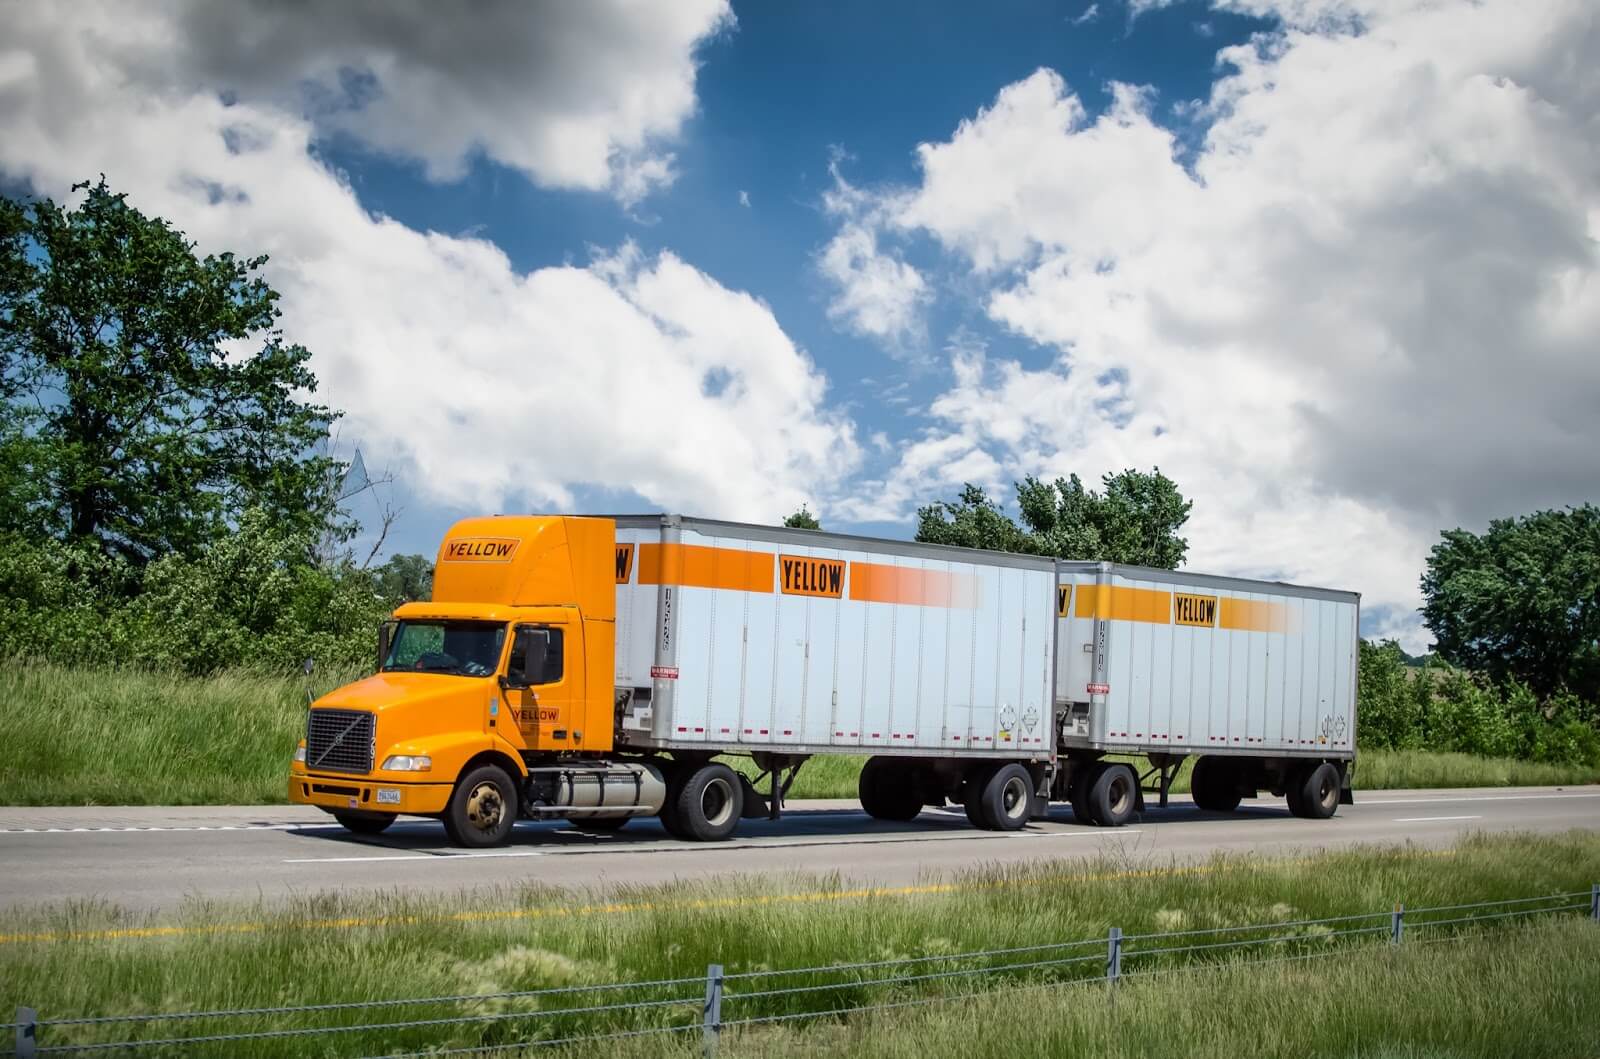 Teamsters Union 대담한 움직임: Yellow의 금융 위기 속에서 22,000개의 트럭 운송 일자리를 위험에 빠뜨리다